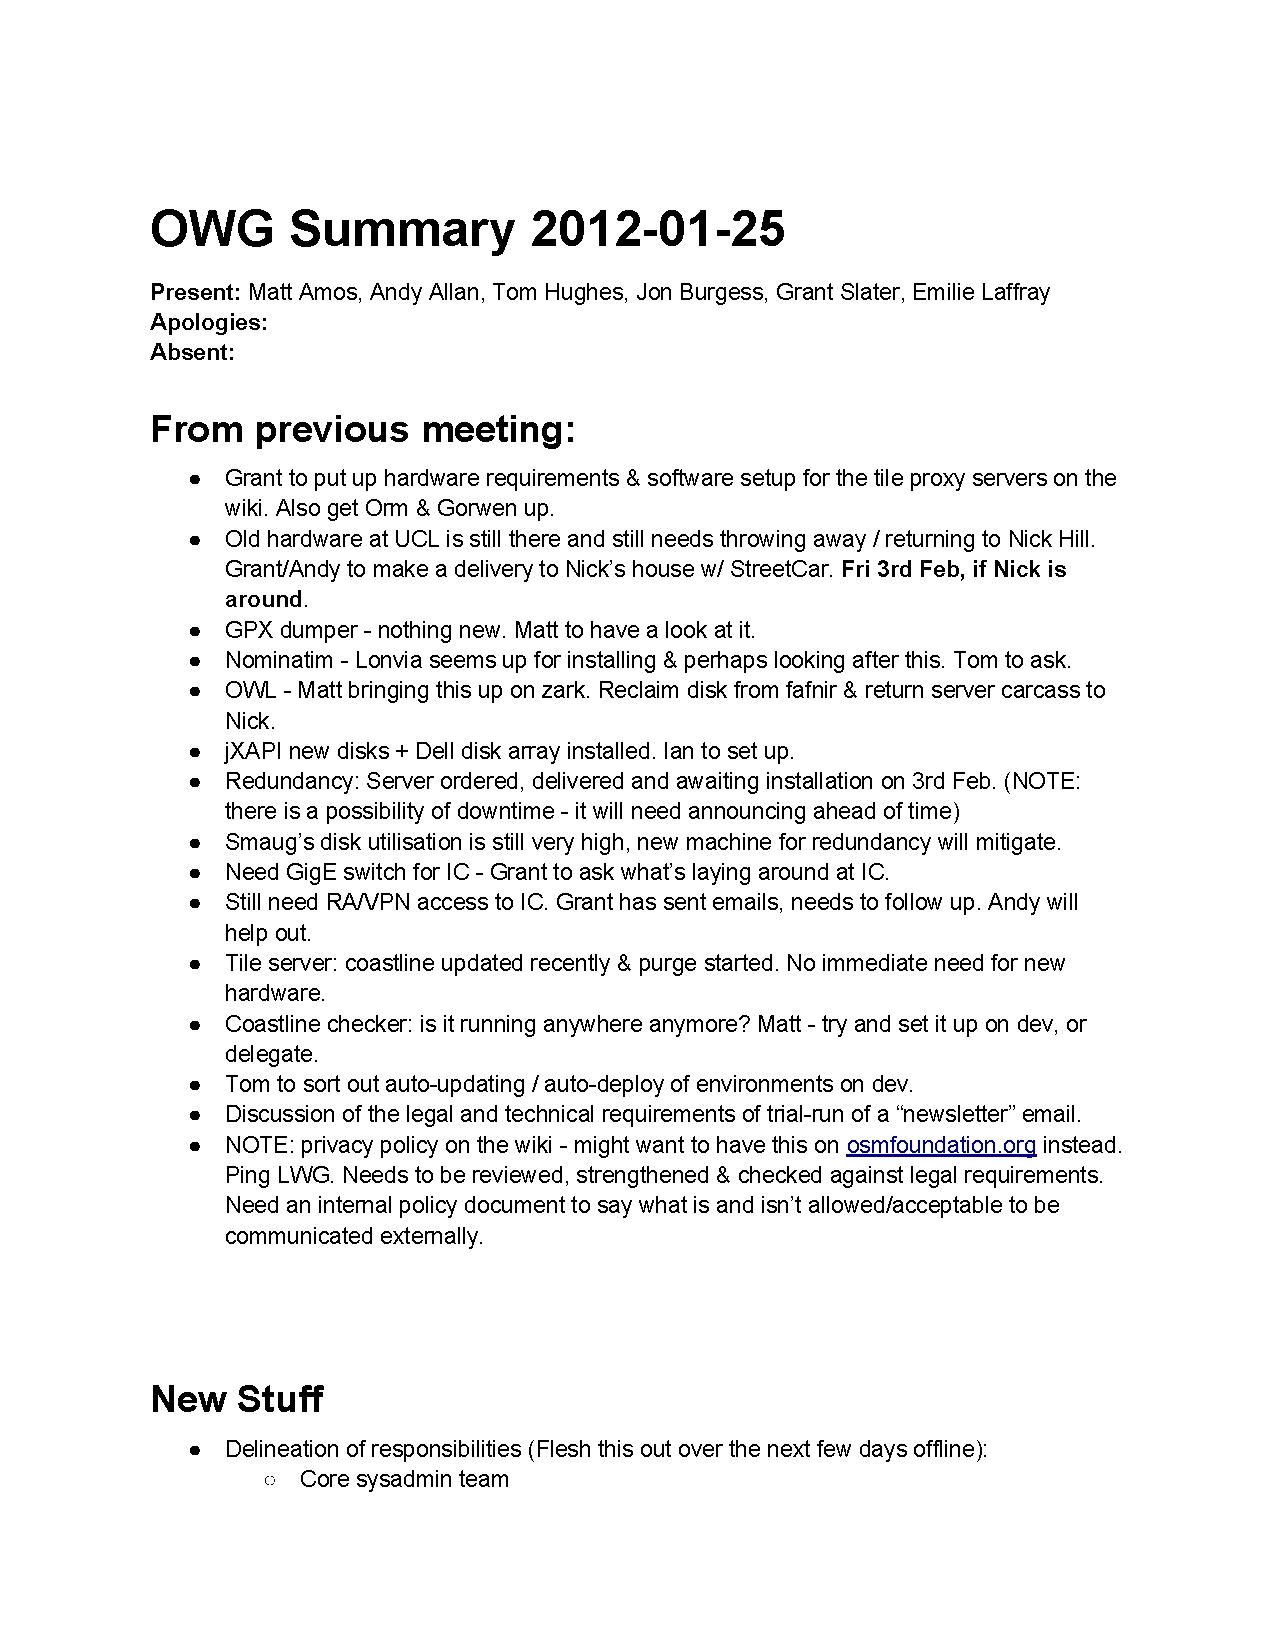 OWG Summary 2012-01-25.pdf